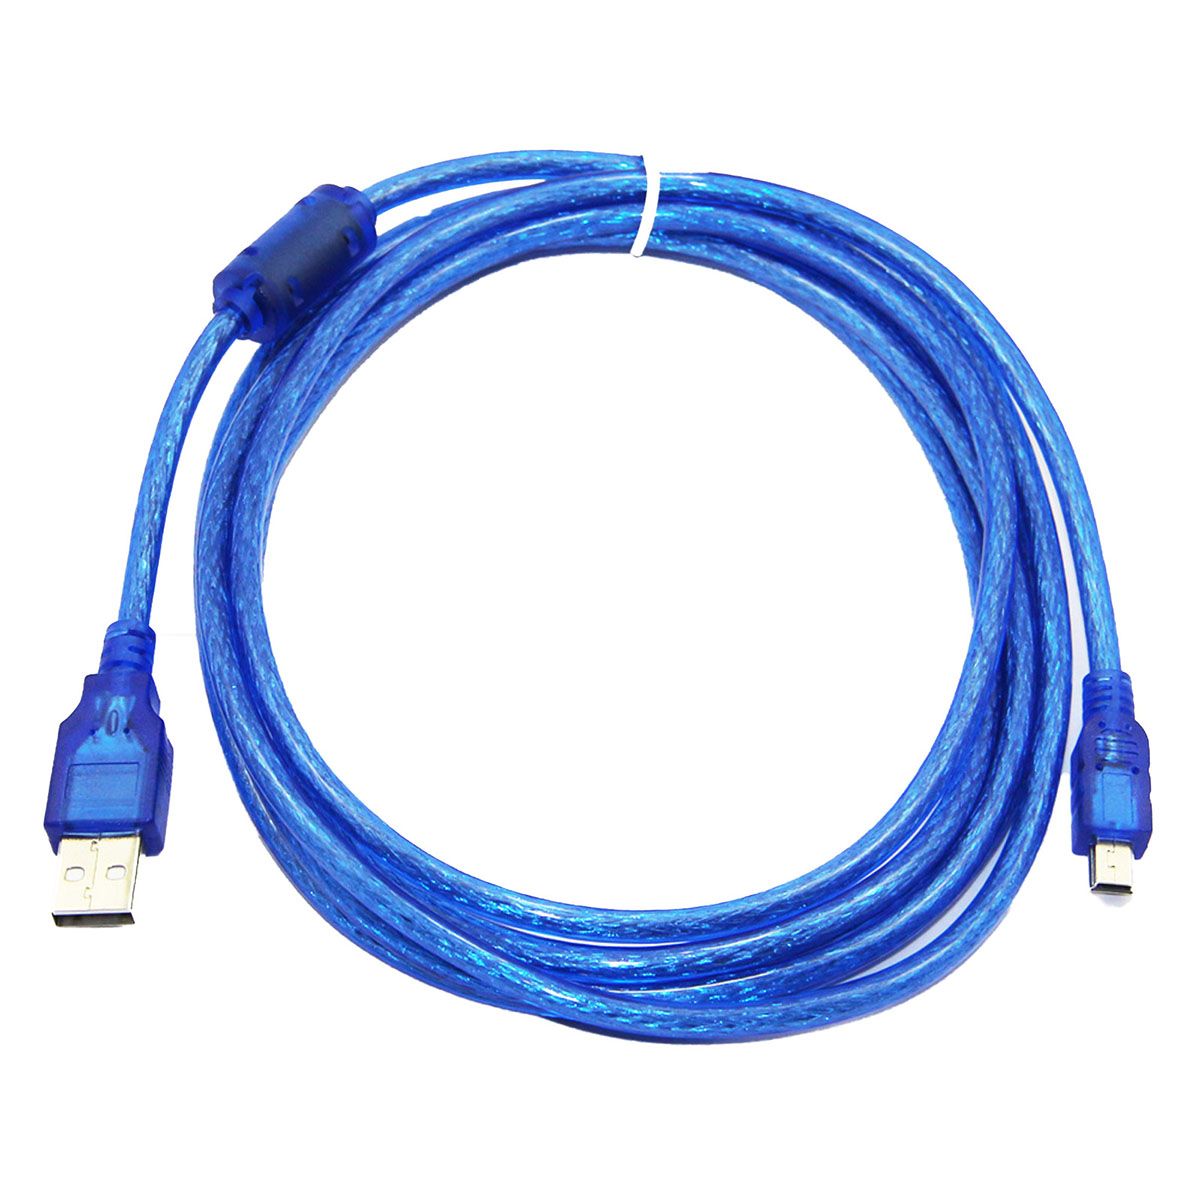 Кабель Mini USB D10 V3, длина 1.5 метра, цвет синий.